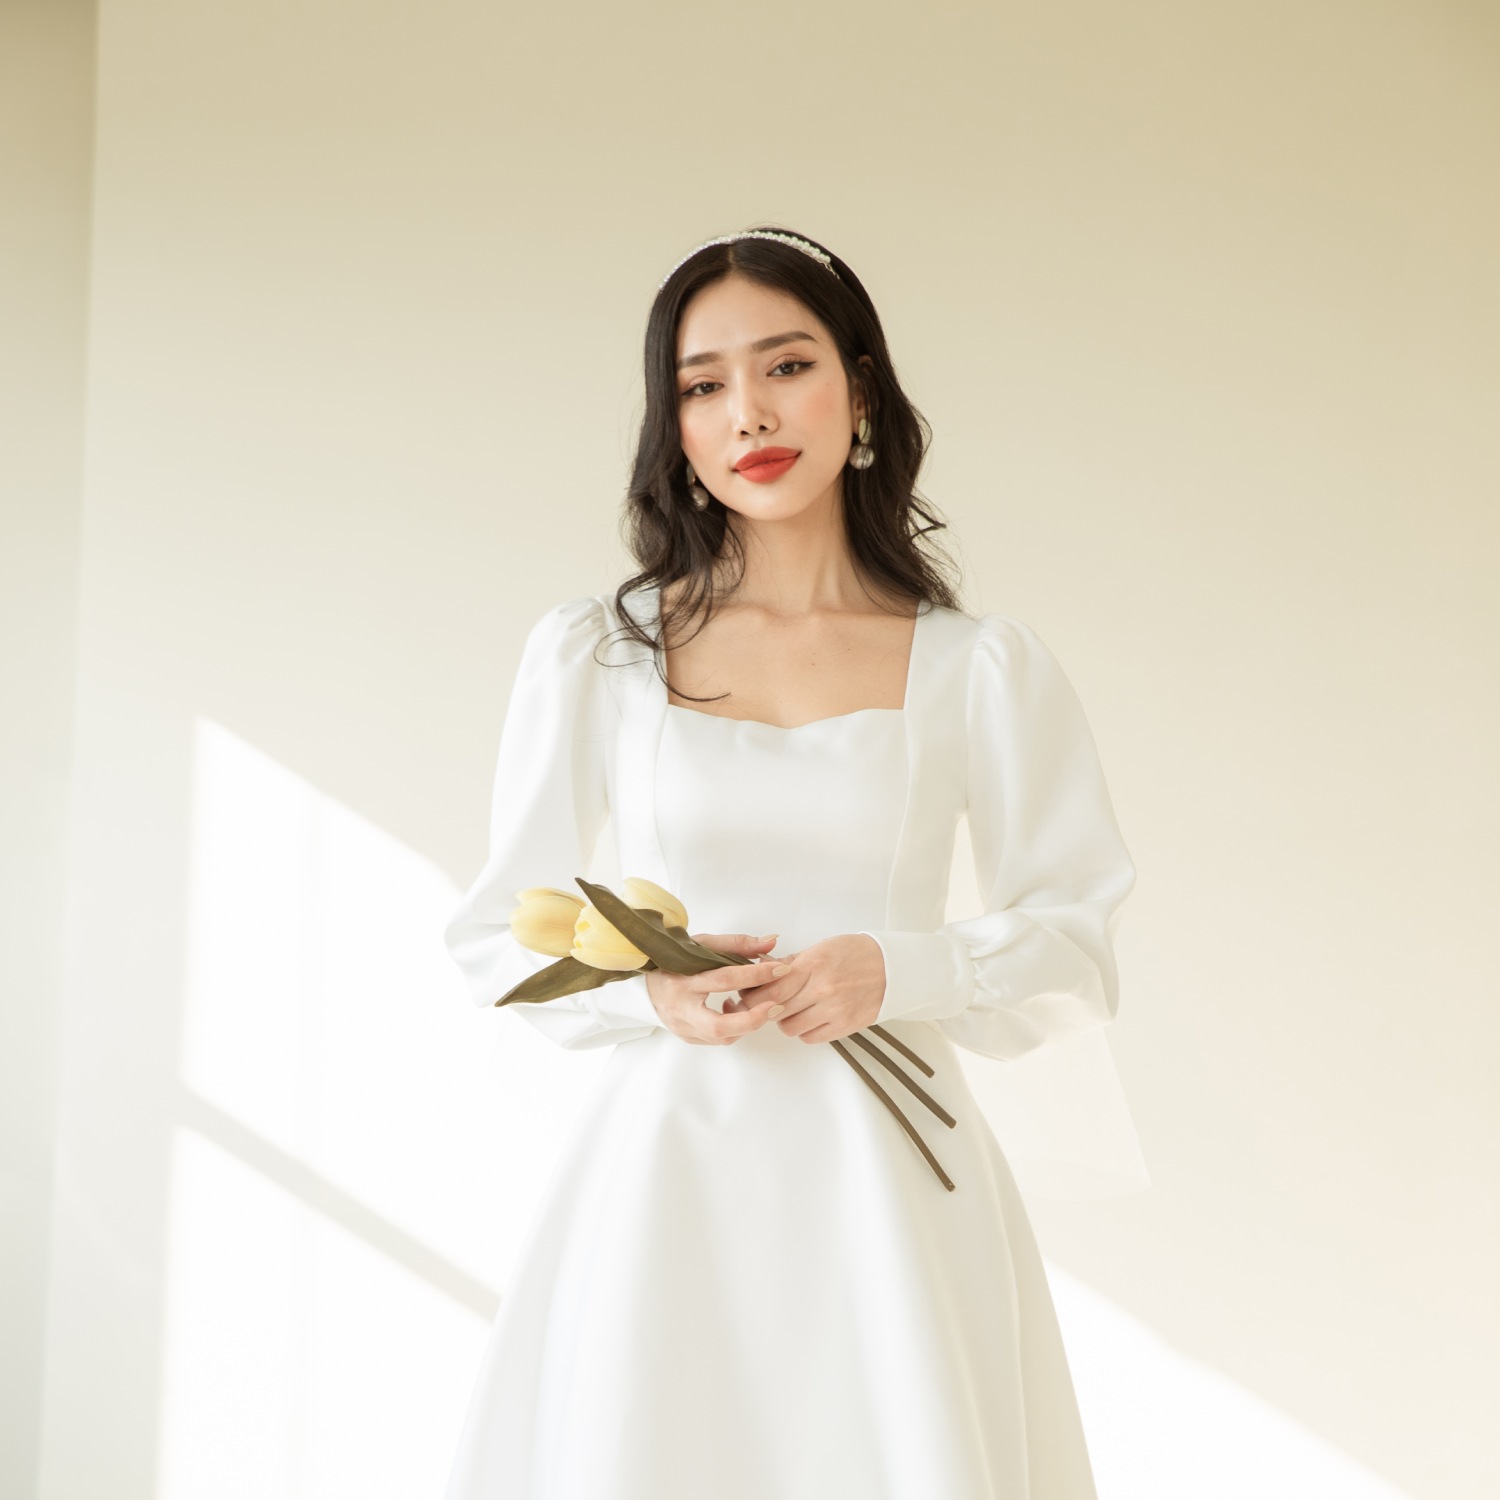 4 kiểu áo cưới tay dài phong cách tối giản, thanh lịch dành cho nàng